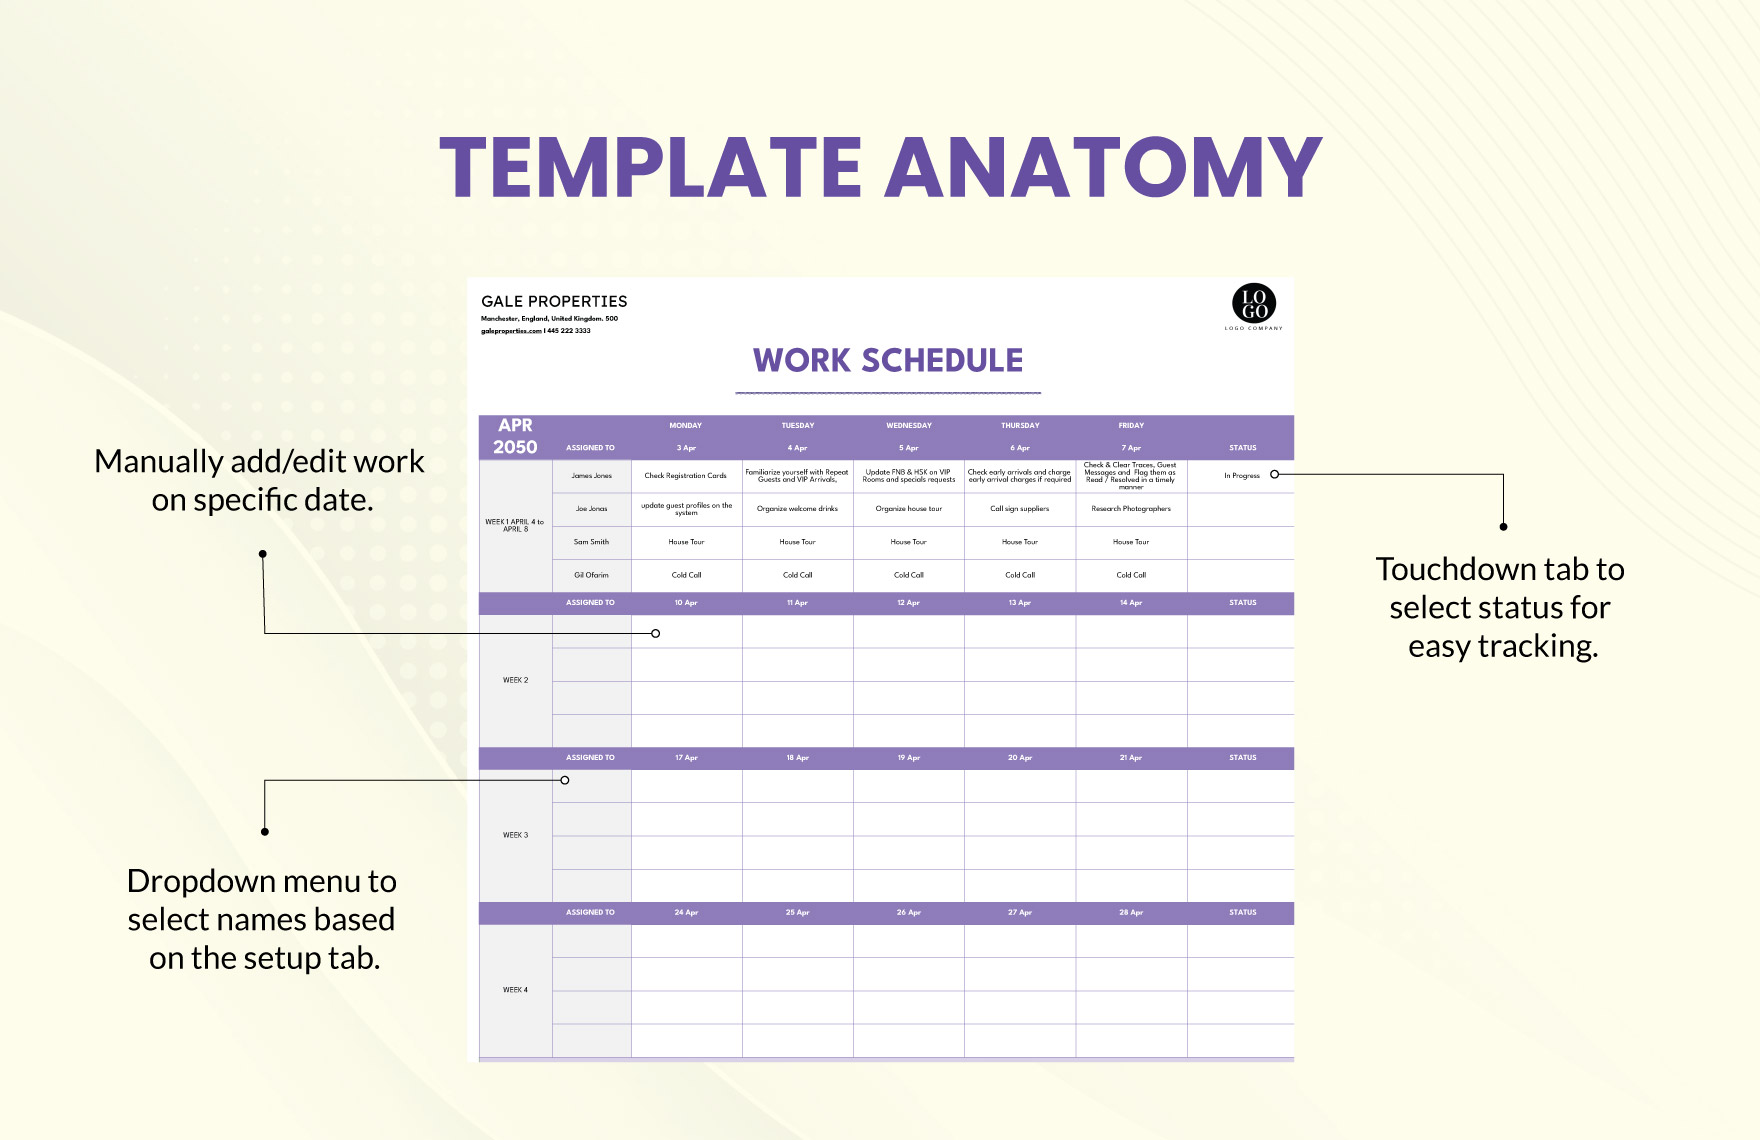 Work Schedule Format